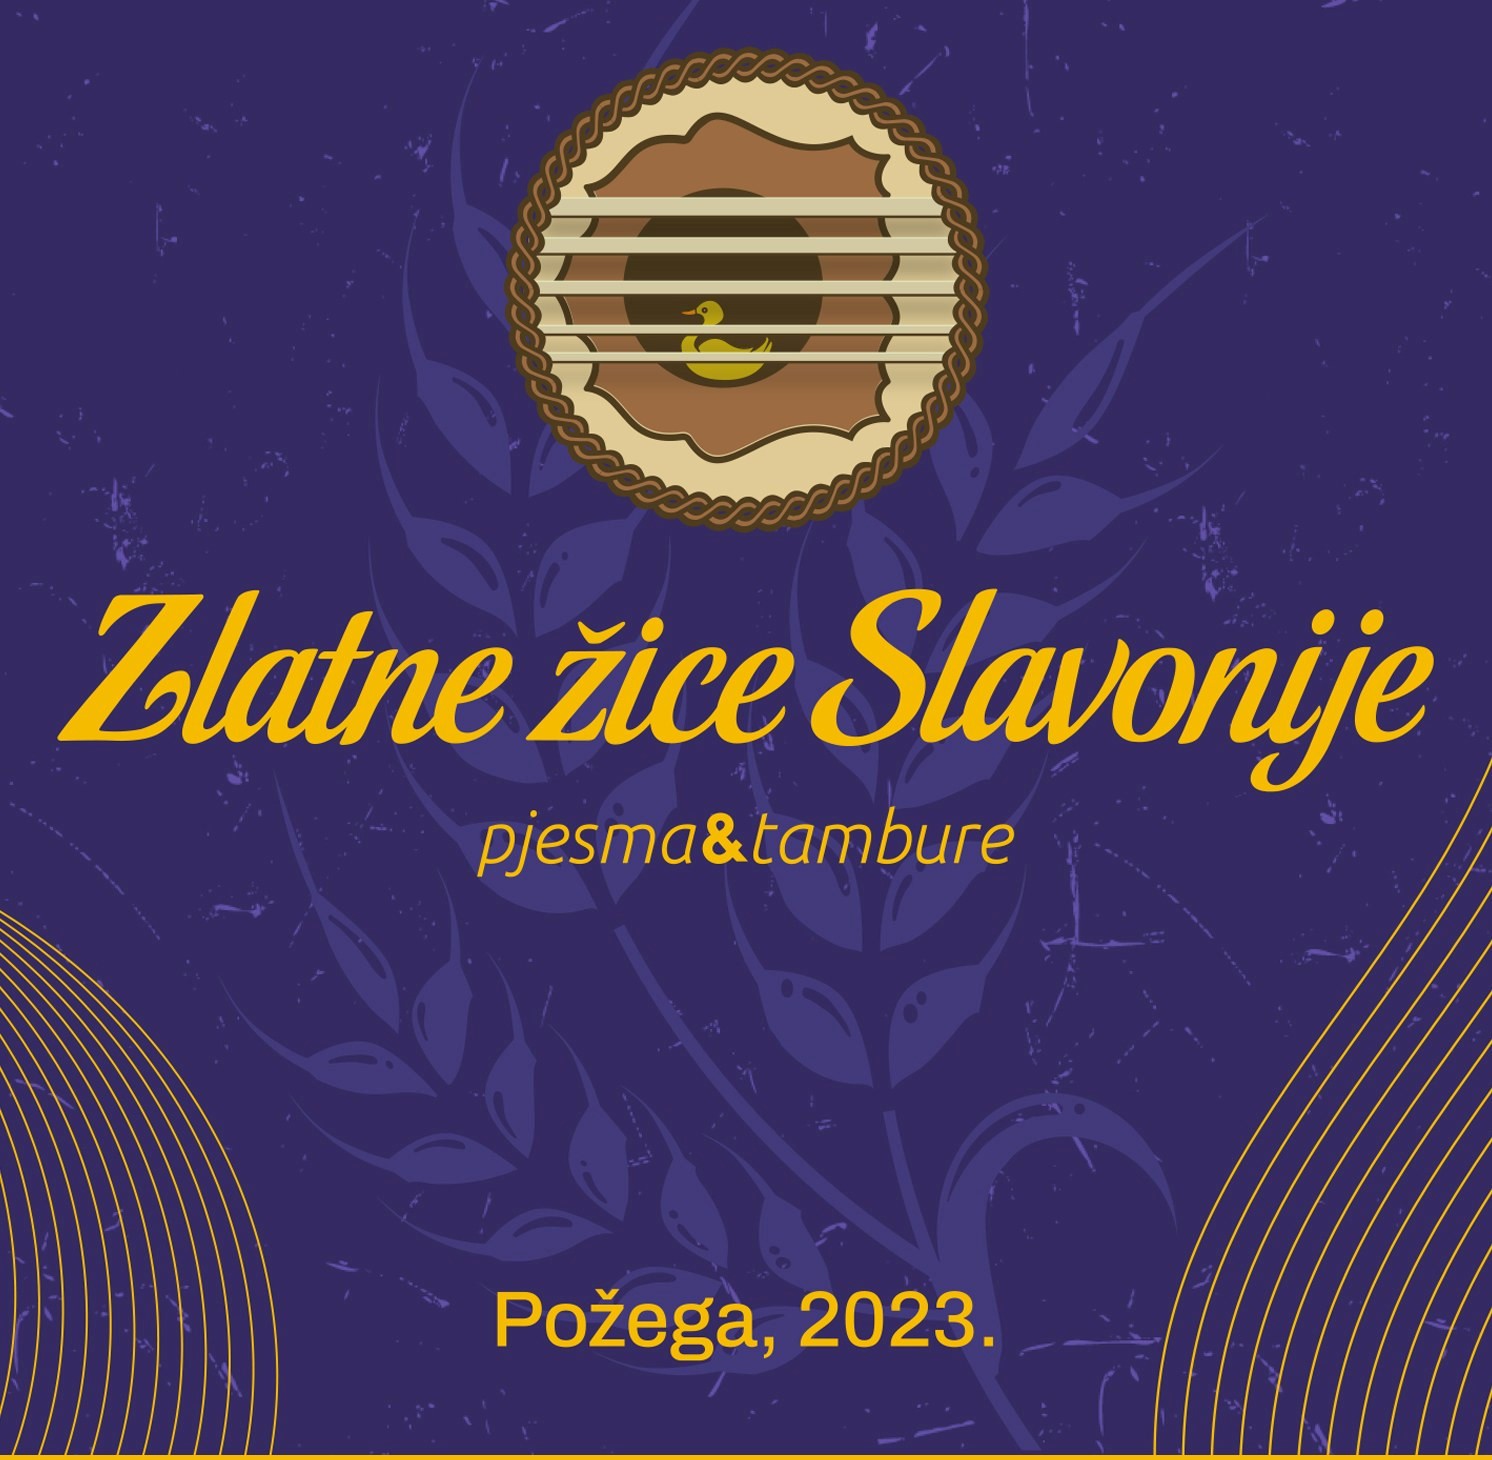 Najveći festival tamburaške glazbe Zlatne žice Slavonije čeka vas raširenih ruku